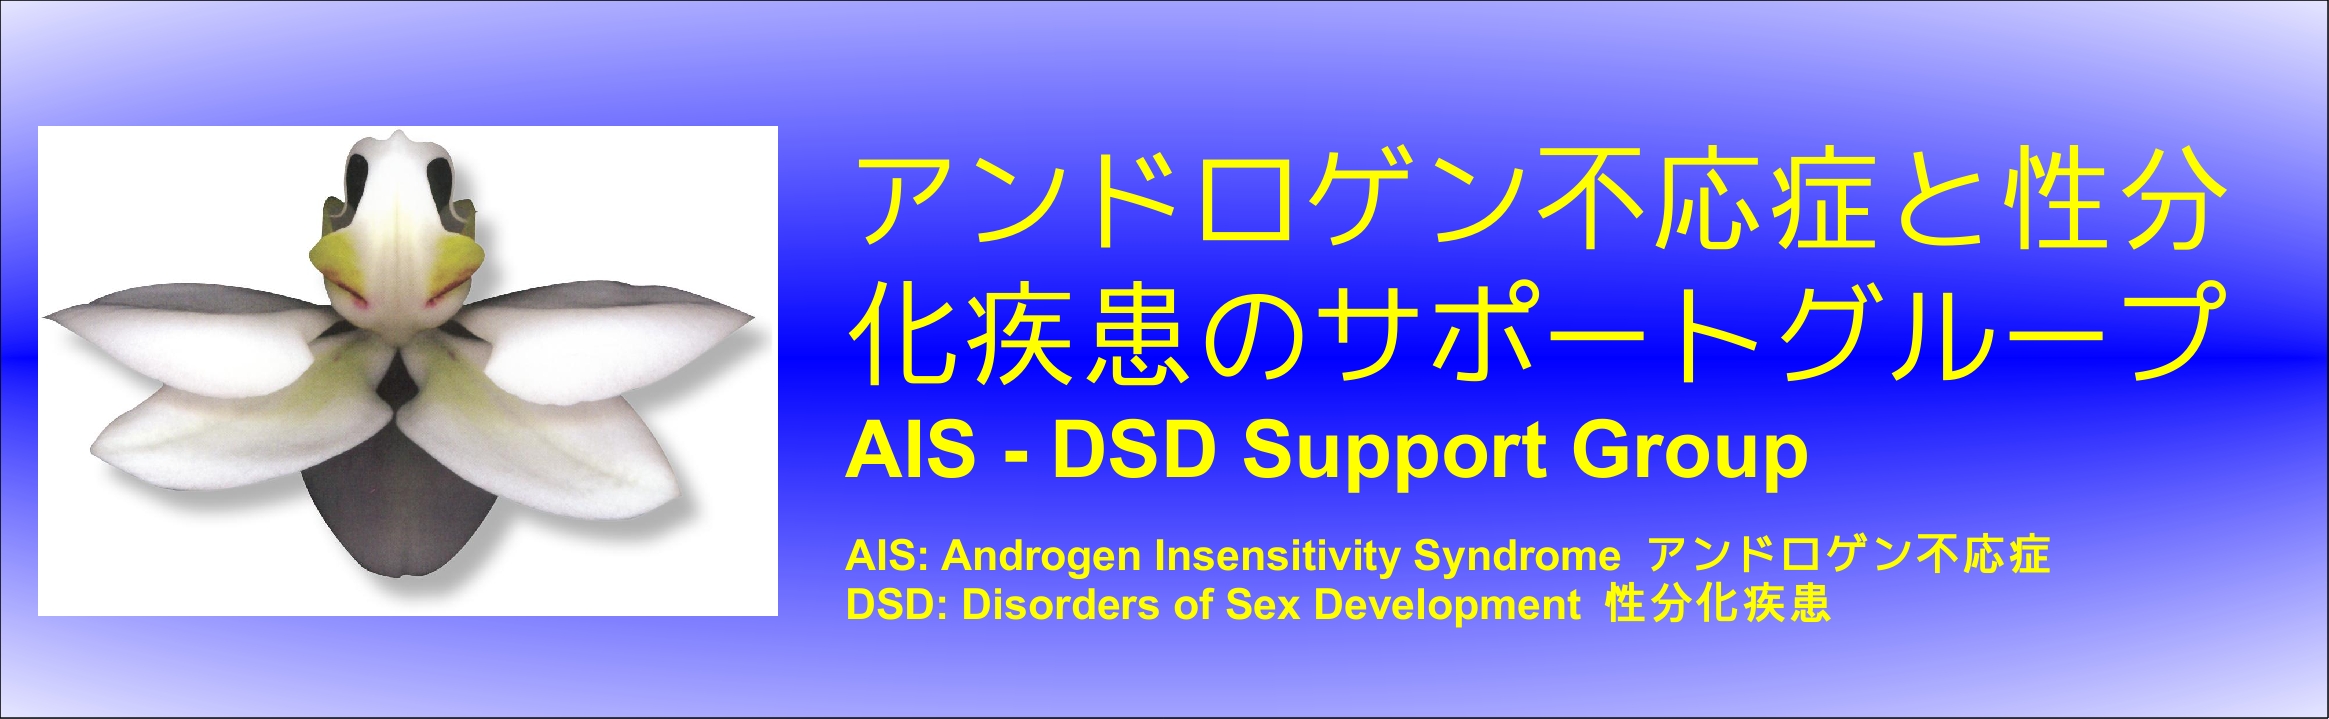 アンドロゲン不応症と性分化疾患のサポートグループ